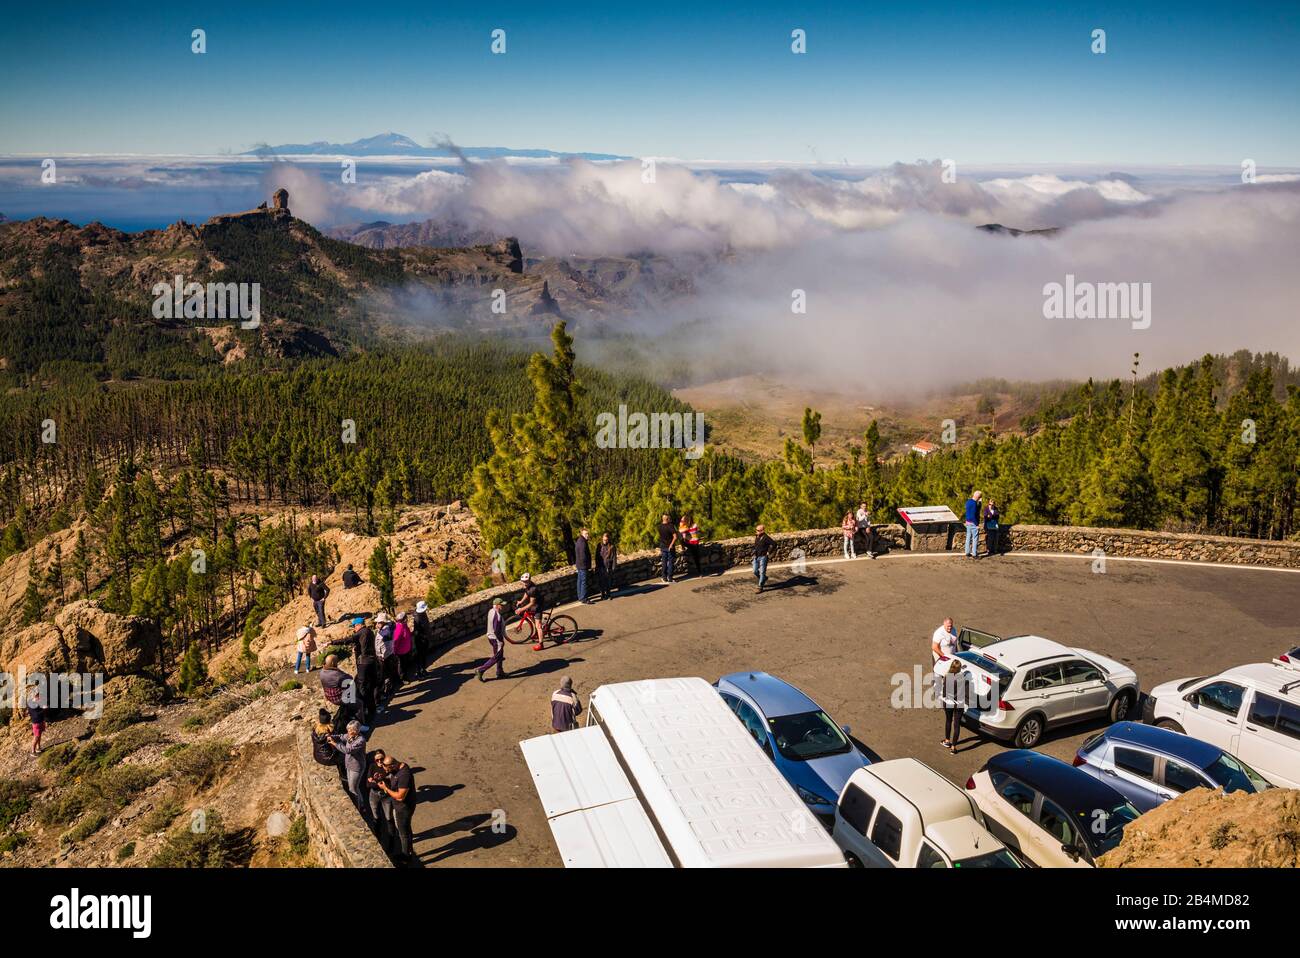 España, Islas Canarias, Gran Canaria, Pozo de las Nieves, un alto ángulo de vista del Roque Nubio y El Teide en la isla Tennerife Foto de stock